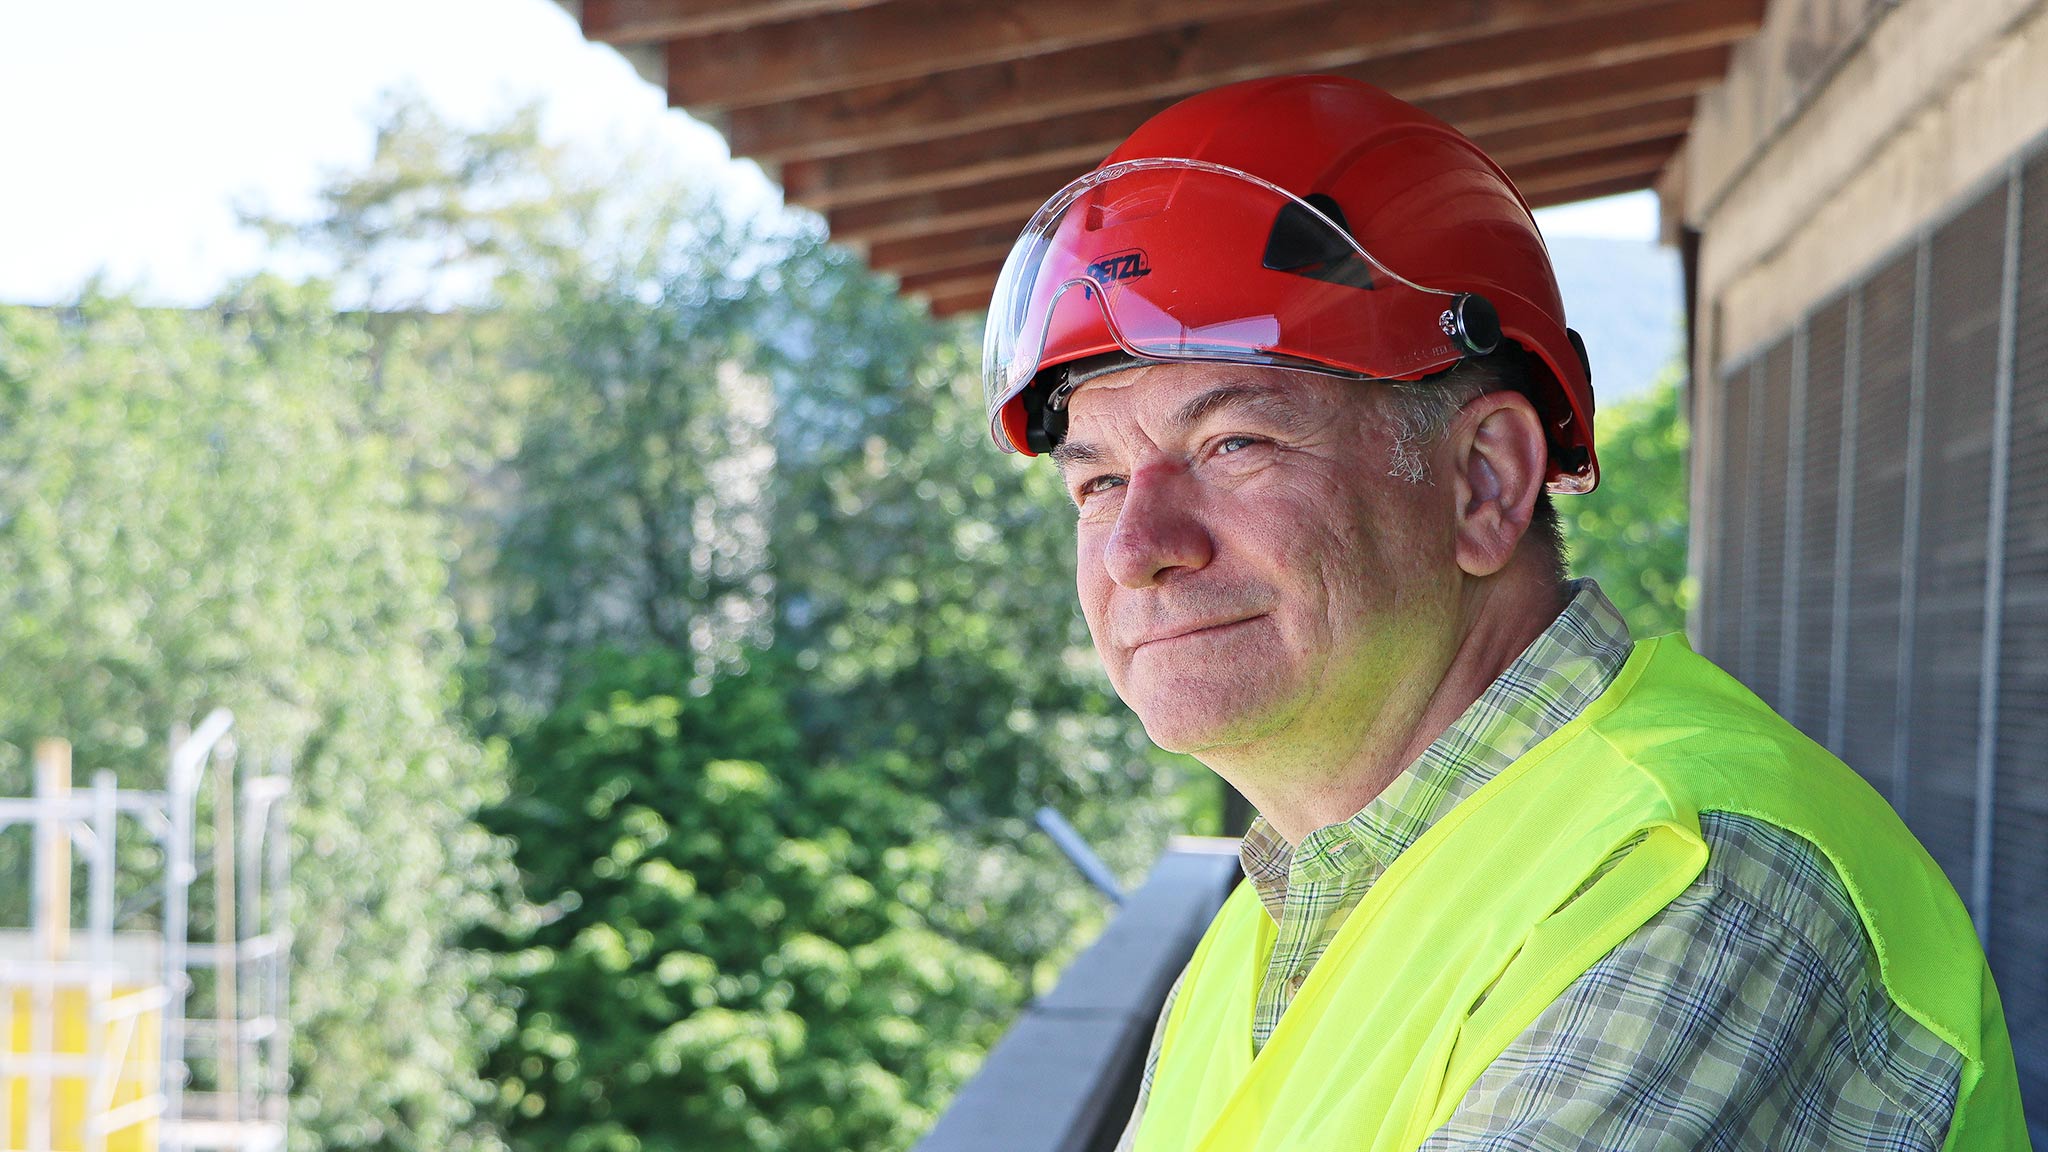 Andreas Ruch, Projektleiter des neuen Unterwerks Therwil mit rotem Baustellenhelm und gelber Leuchtweste